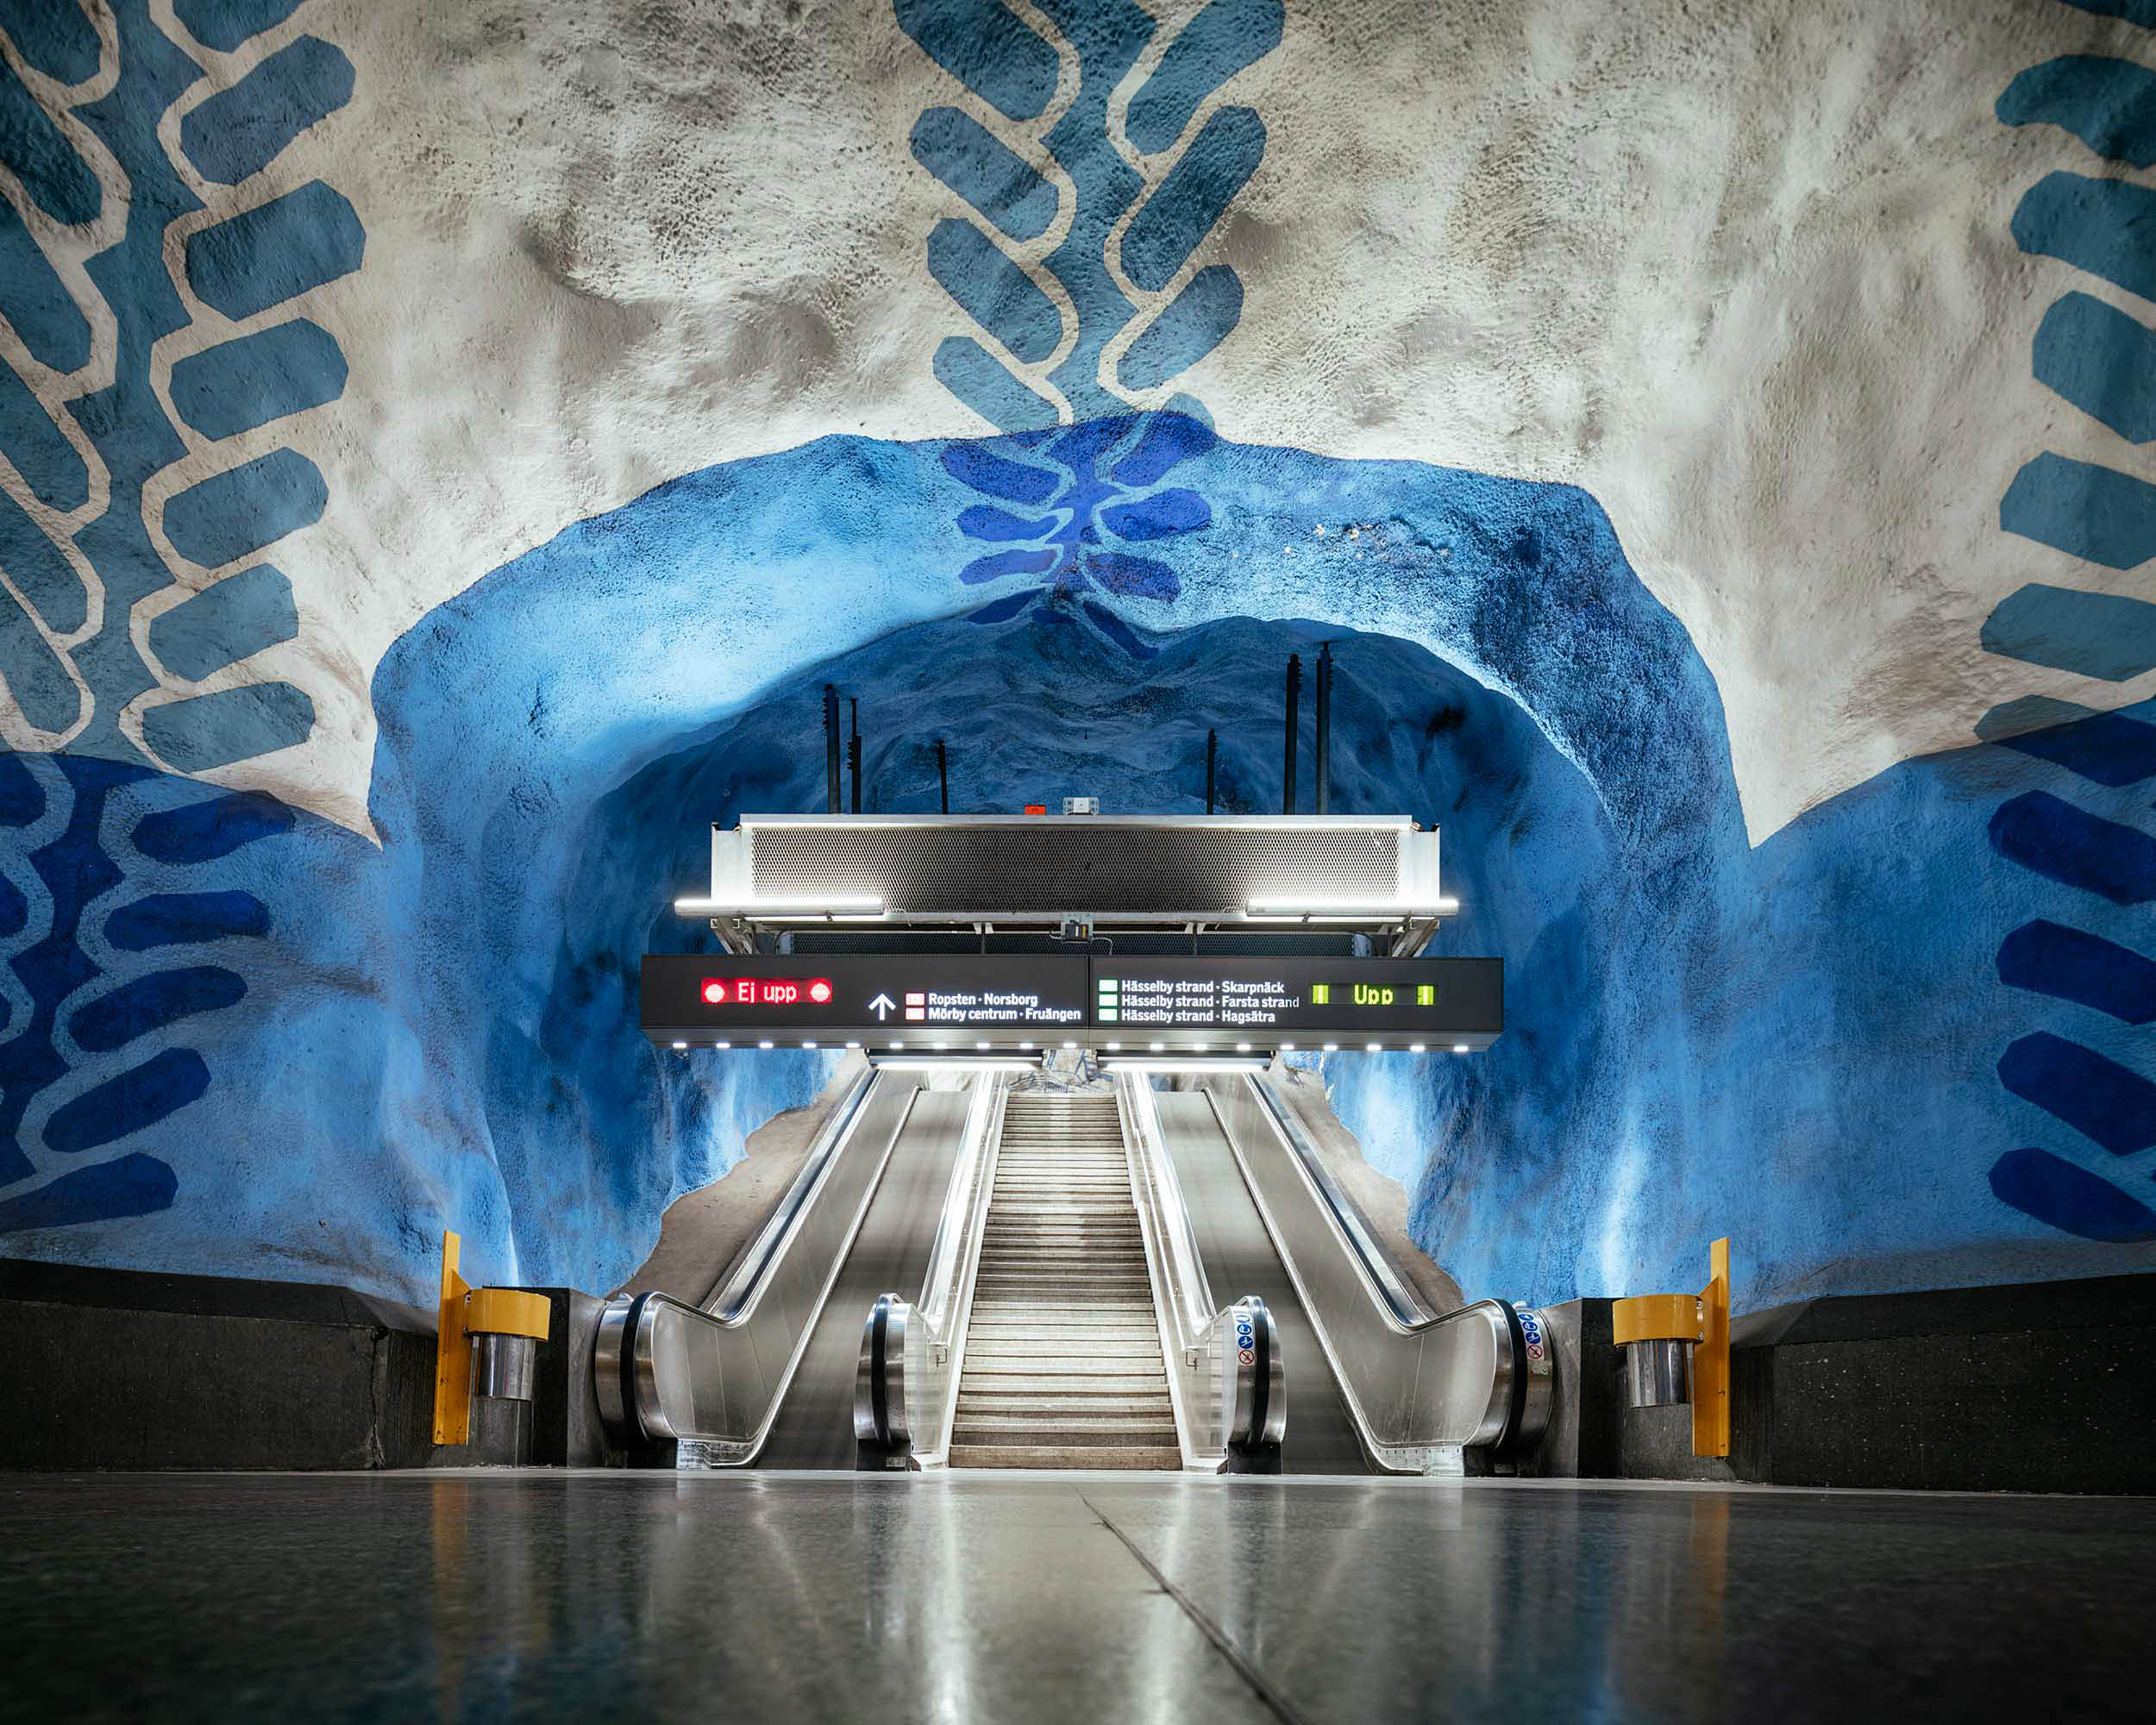 t-centralen_station_metro_underground_architecture_transport_stockholm_sweden